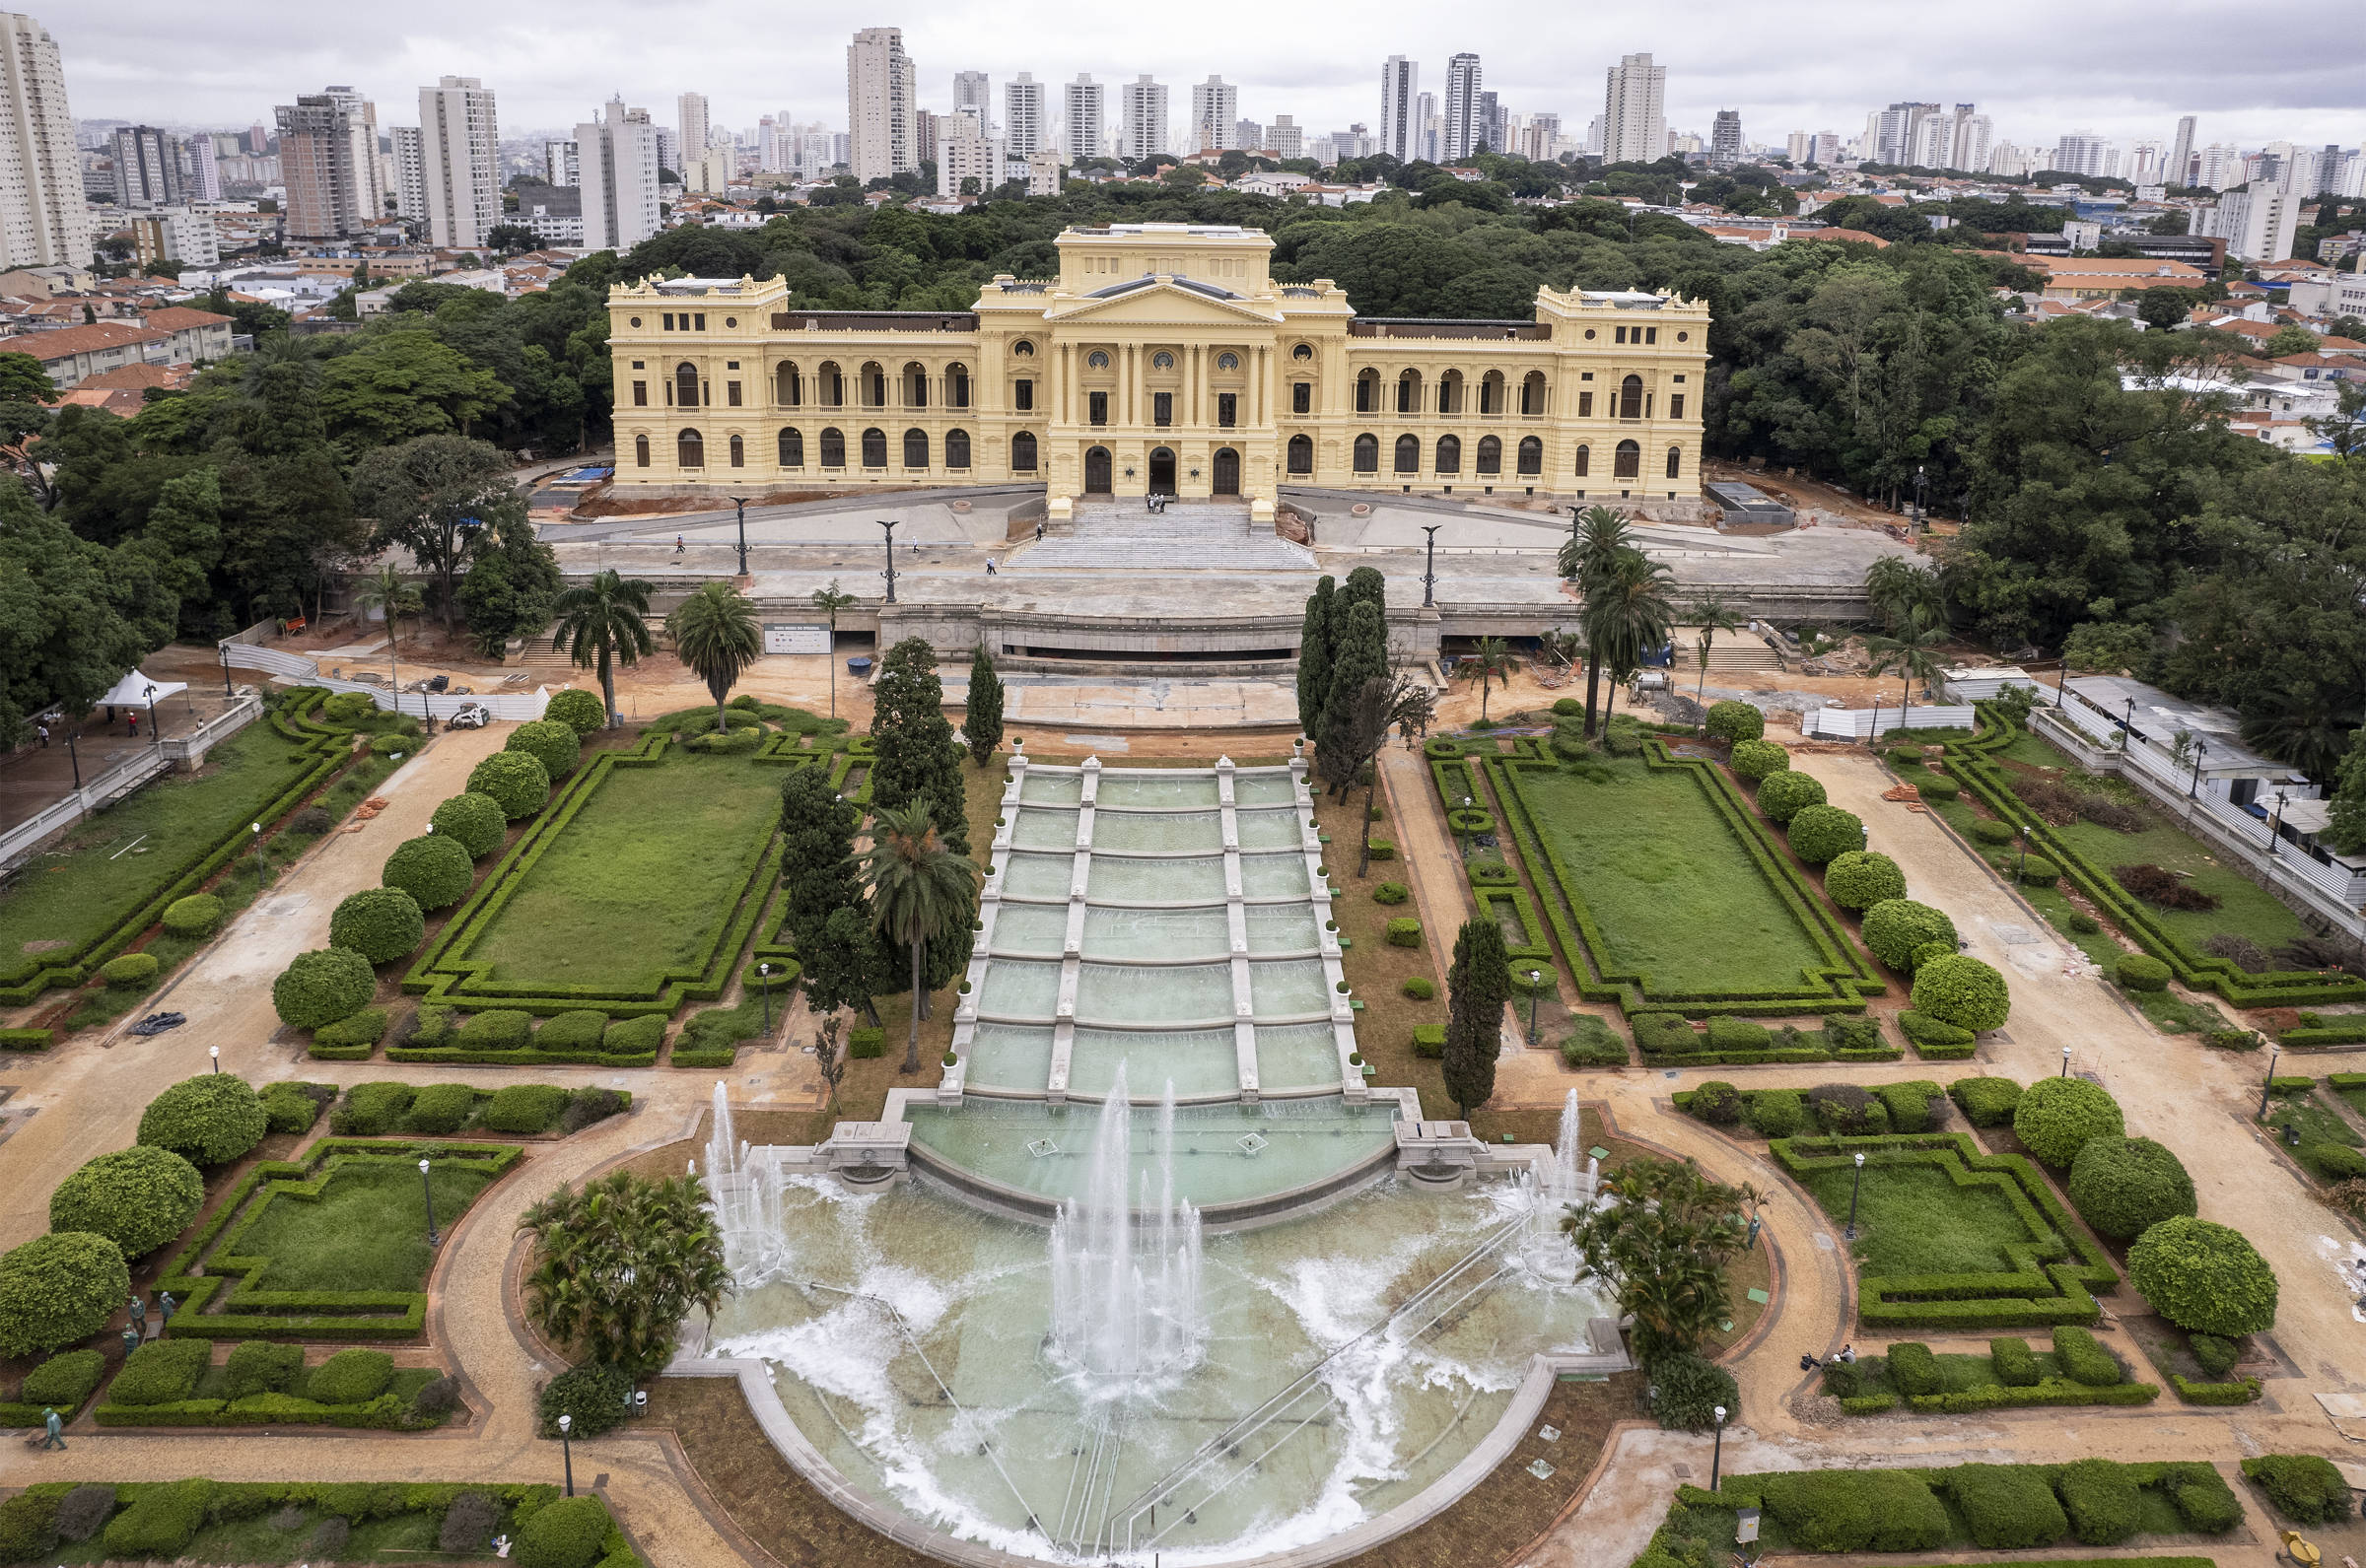 Museu do Ipiranga comemora o Dia da Independência se preparando para o  bicentenário - Jornal O São Paulo